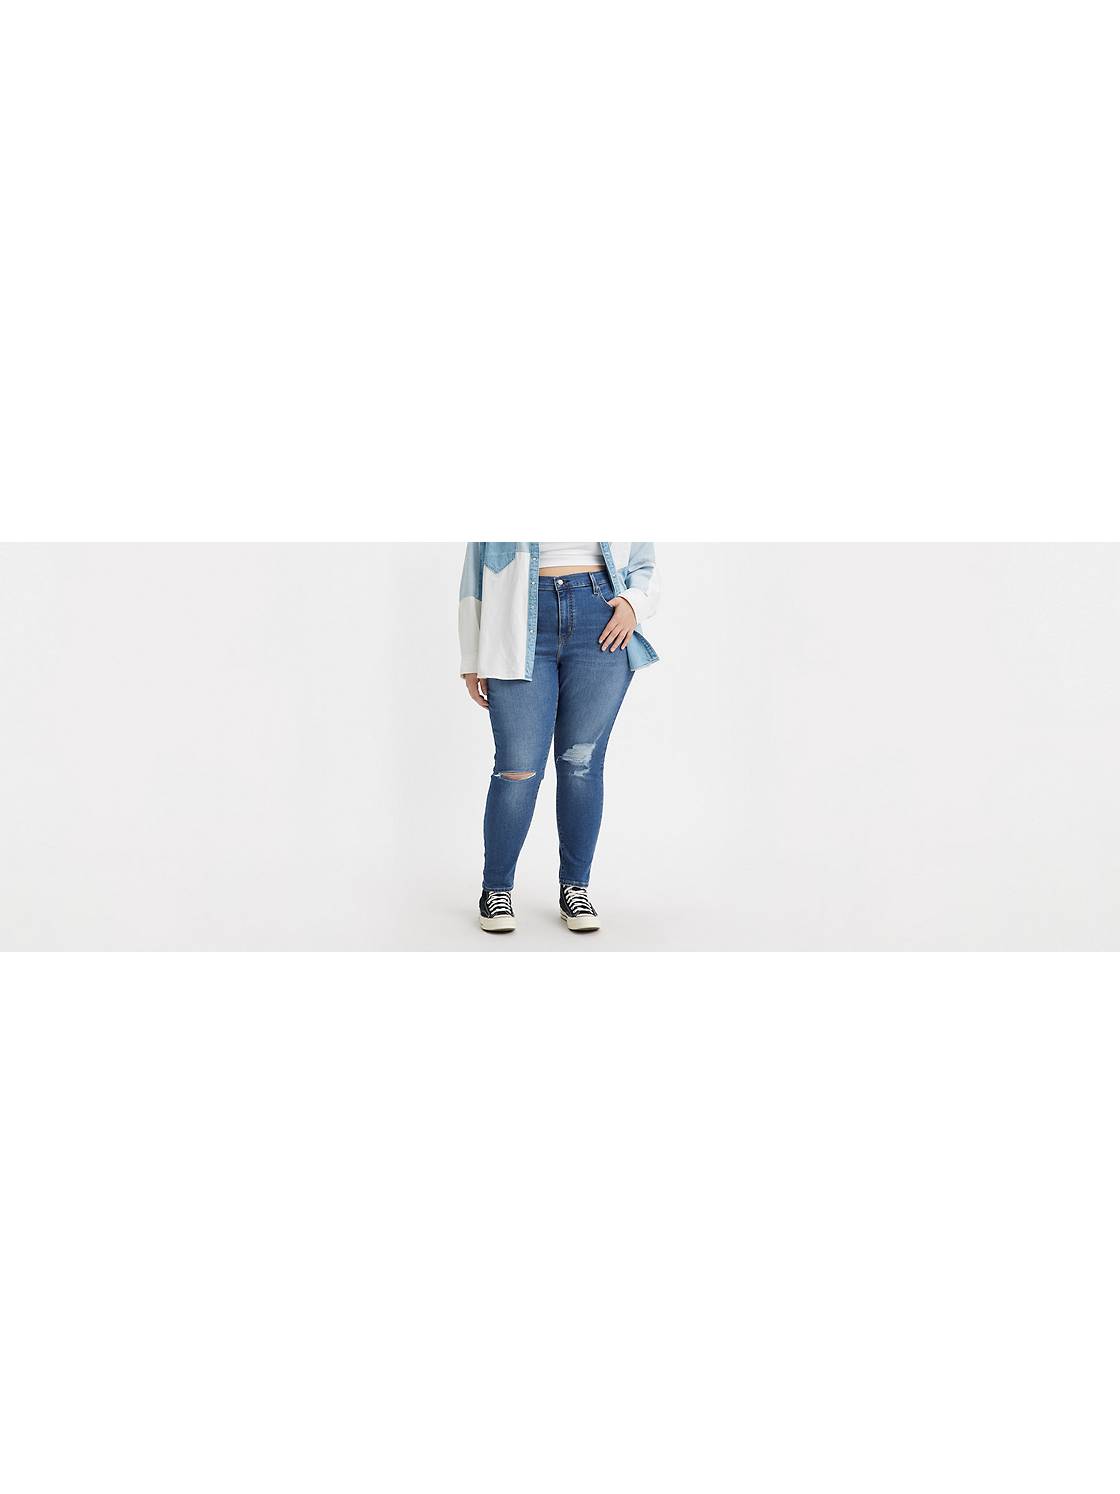 garaje Prisionero de guerra legal Women's Slim Fit Jeans: Shop Slim Women's Jeans | Levi's® US